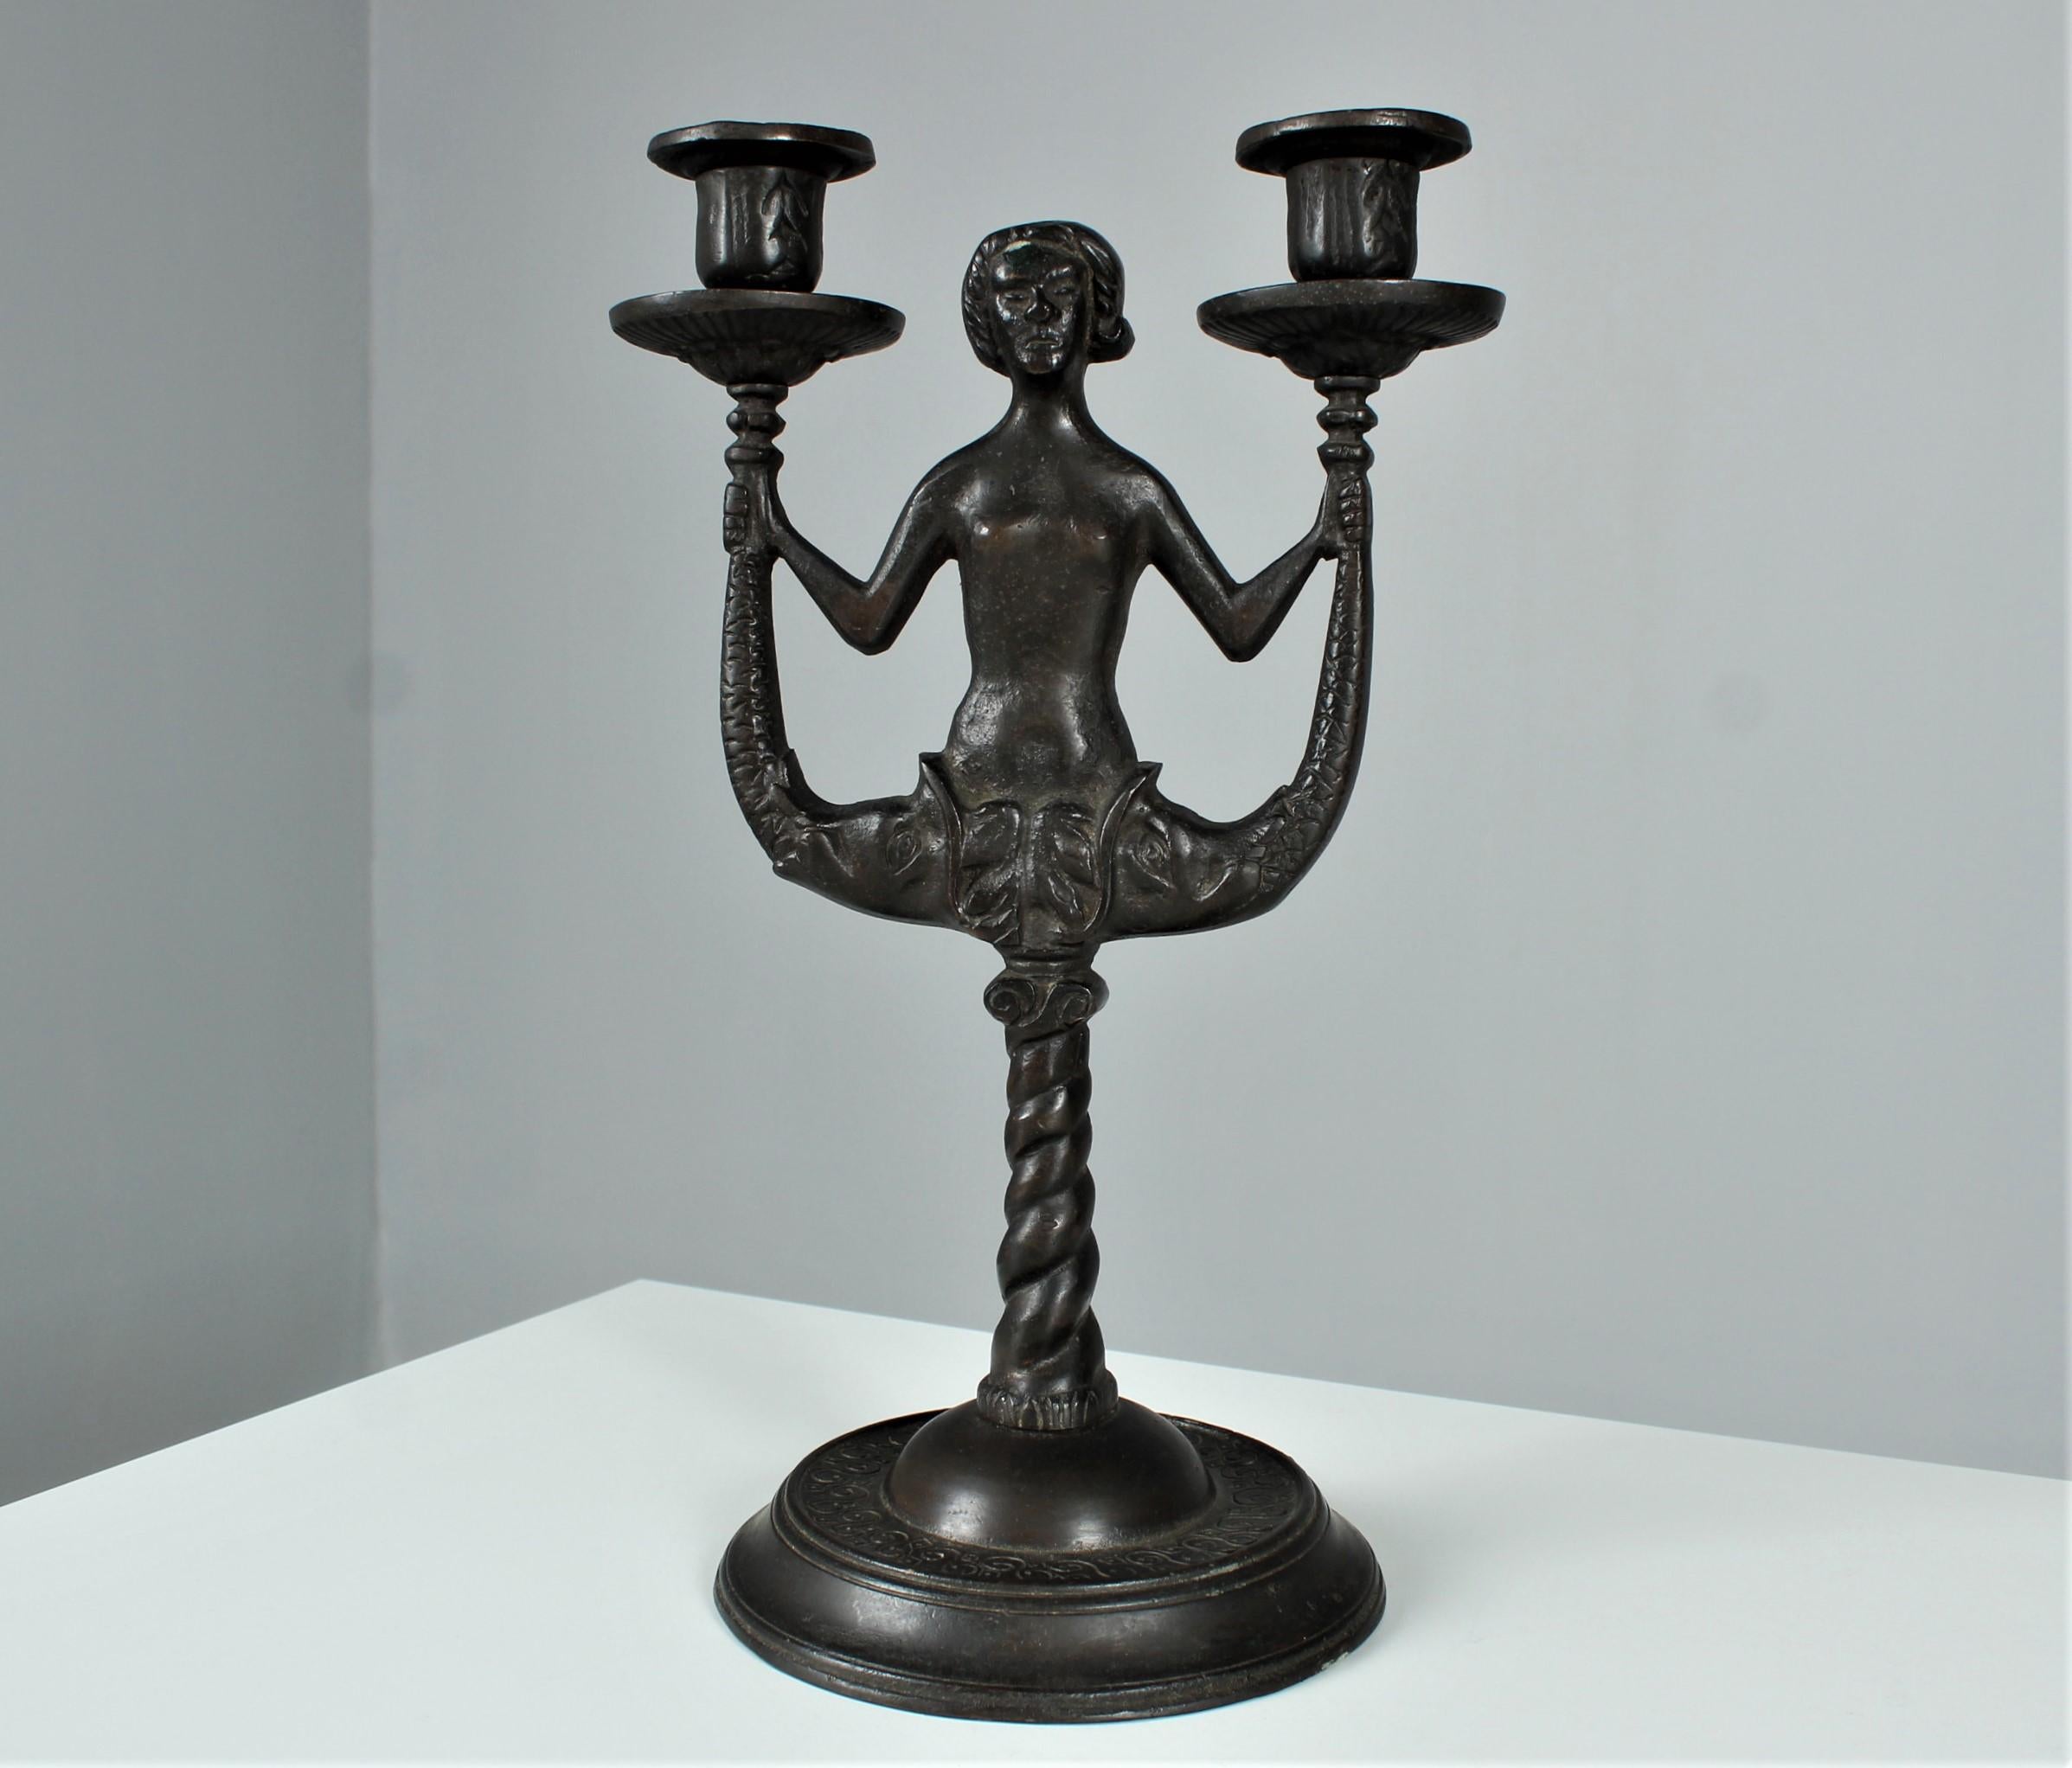 Exceptionnel chandelier ancien en bronze patiné.
Superbe travail de bronze très lourd.
Représentation d'un personnage fantasmé avec deux poissons à la place des jambes.
Probablement en France, vers 1920 / 1930.